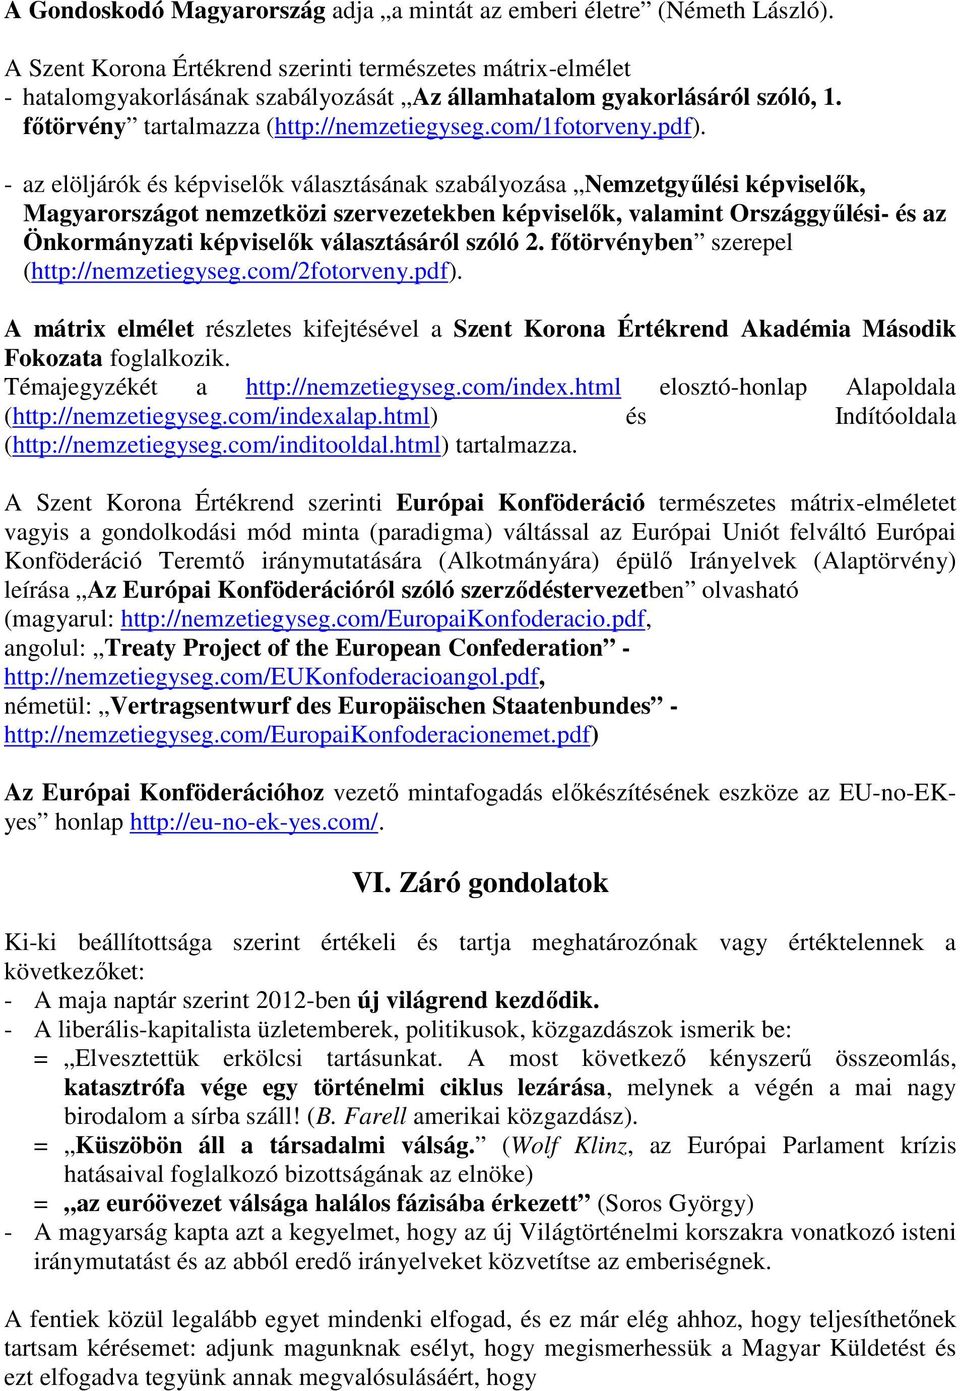 pdf). - az elöljárók és képviselők választásának szabályozása Nemzetgyűlési képviselők, Magyarországot nemzetközi szervezetekben képviselők, valamint Országgyűlési- és az Önkormányzati képviselők